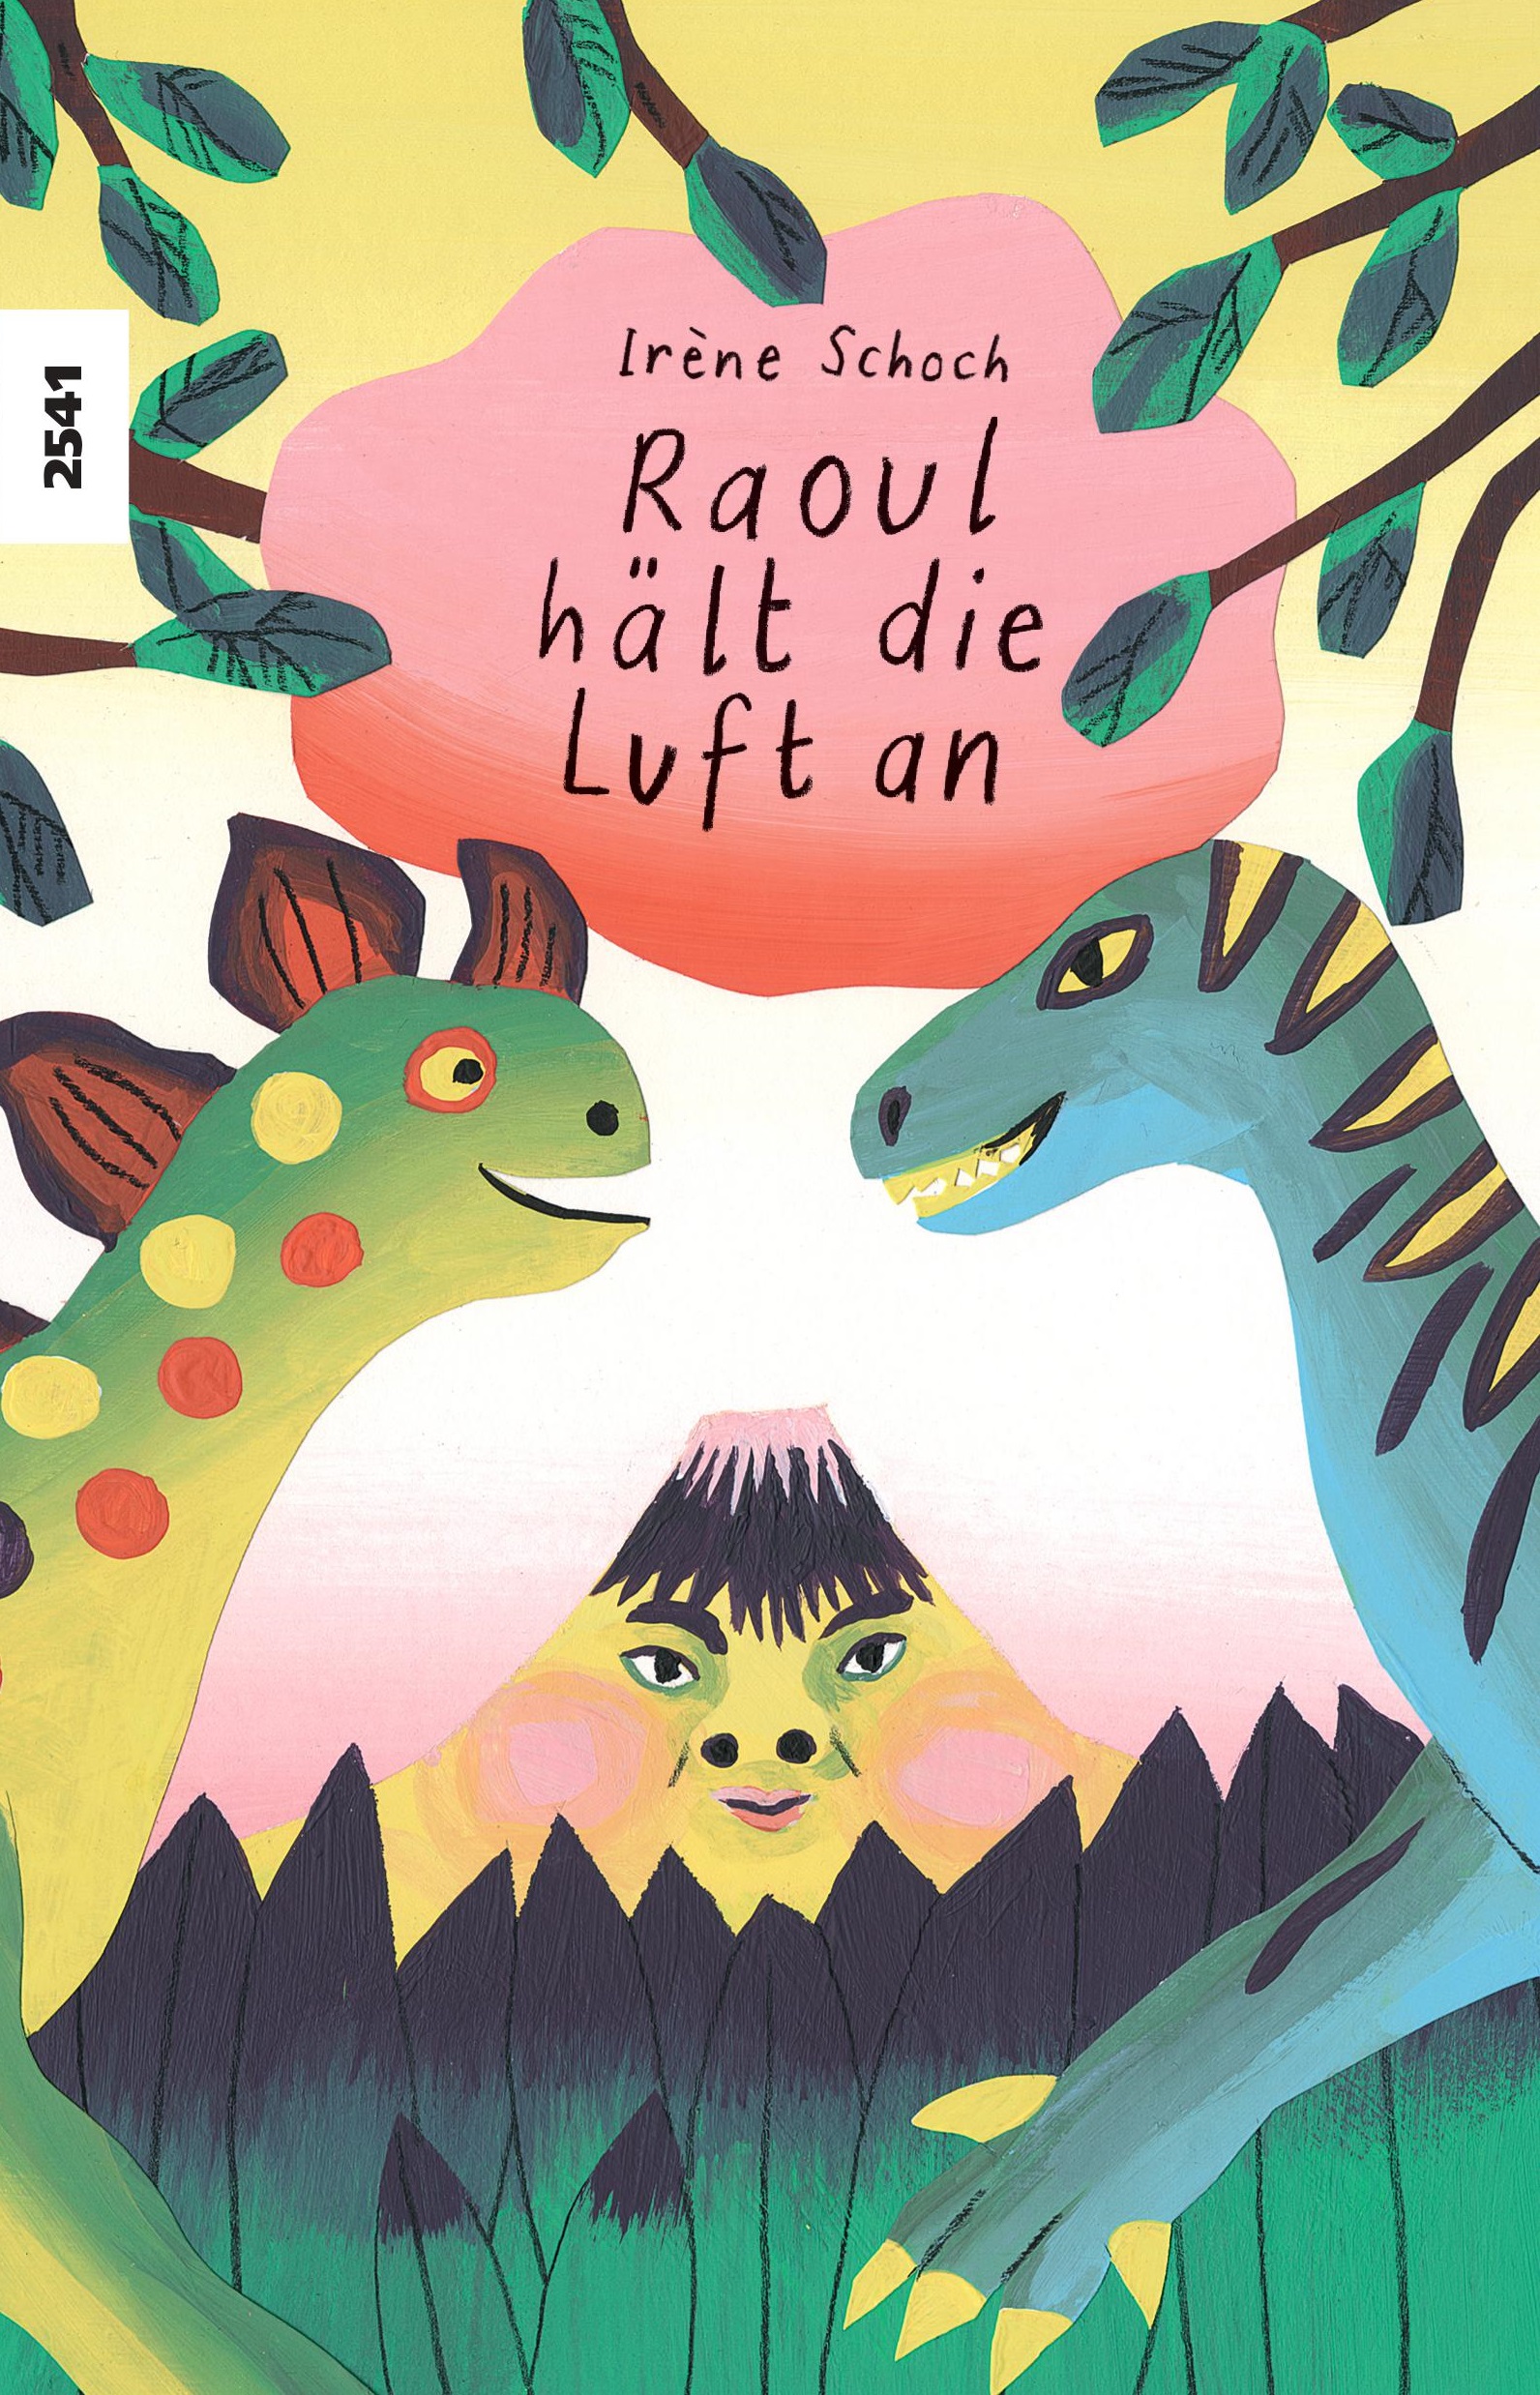 Raoul haelt die Luft an, ein Kinderbuch von Irène Schoch, SJW Verlag, Gefühle, Erstlesetext